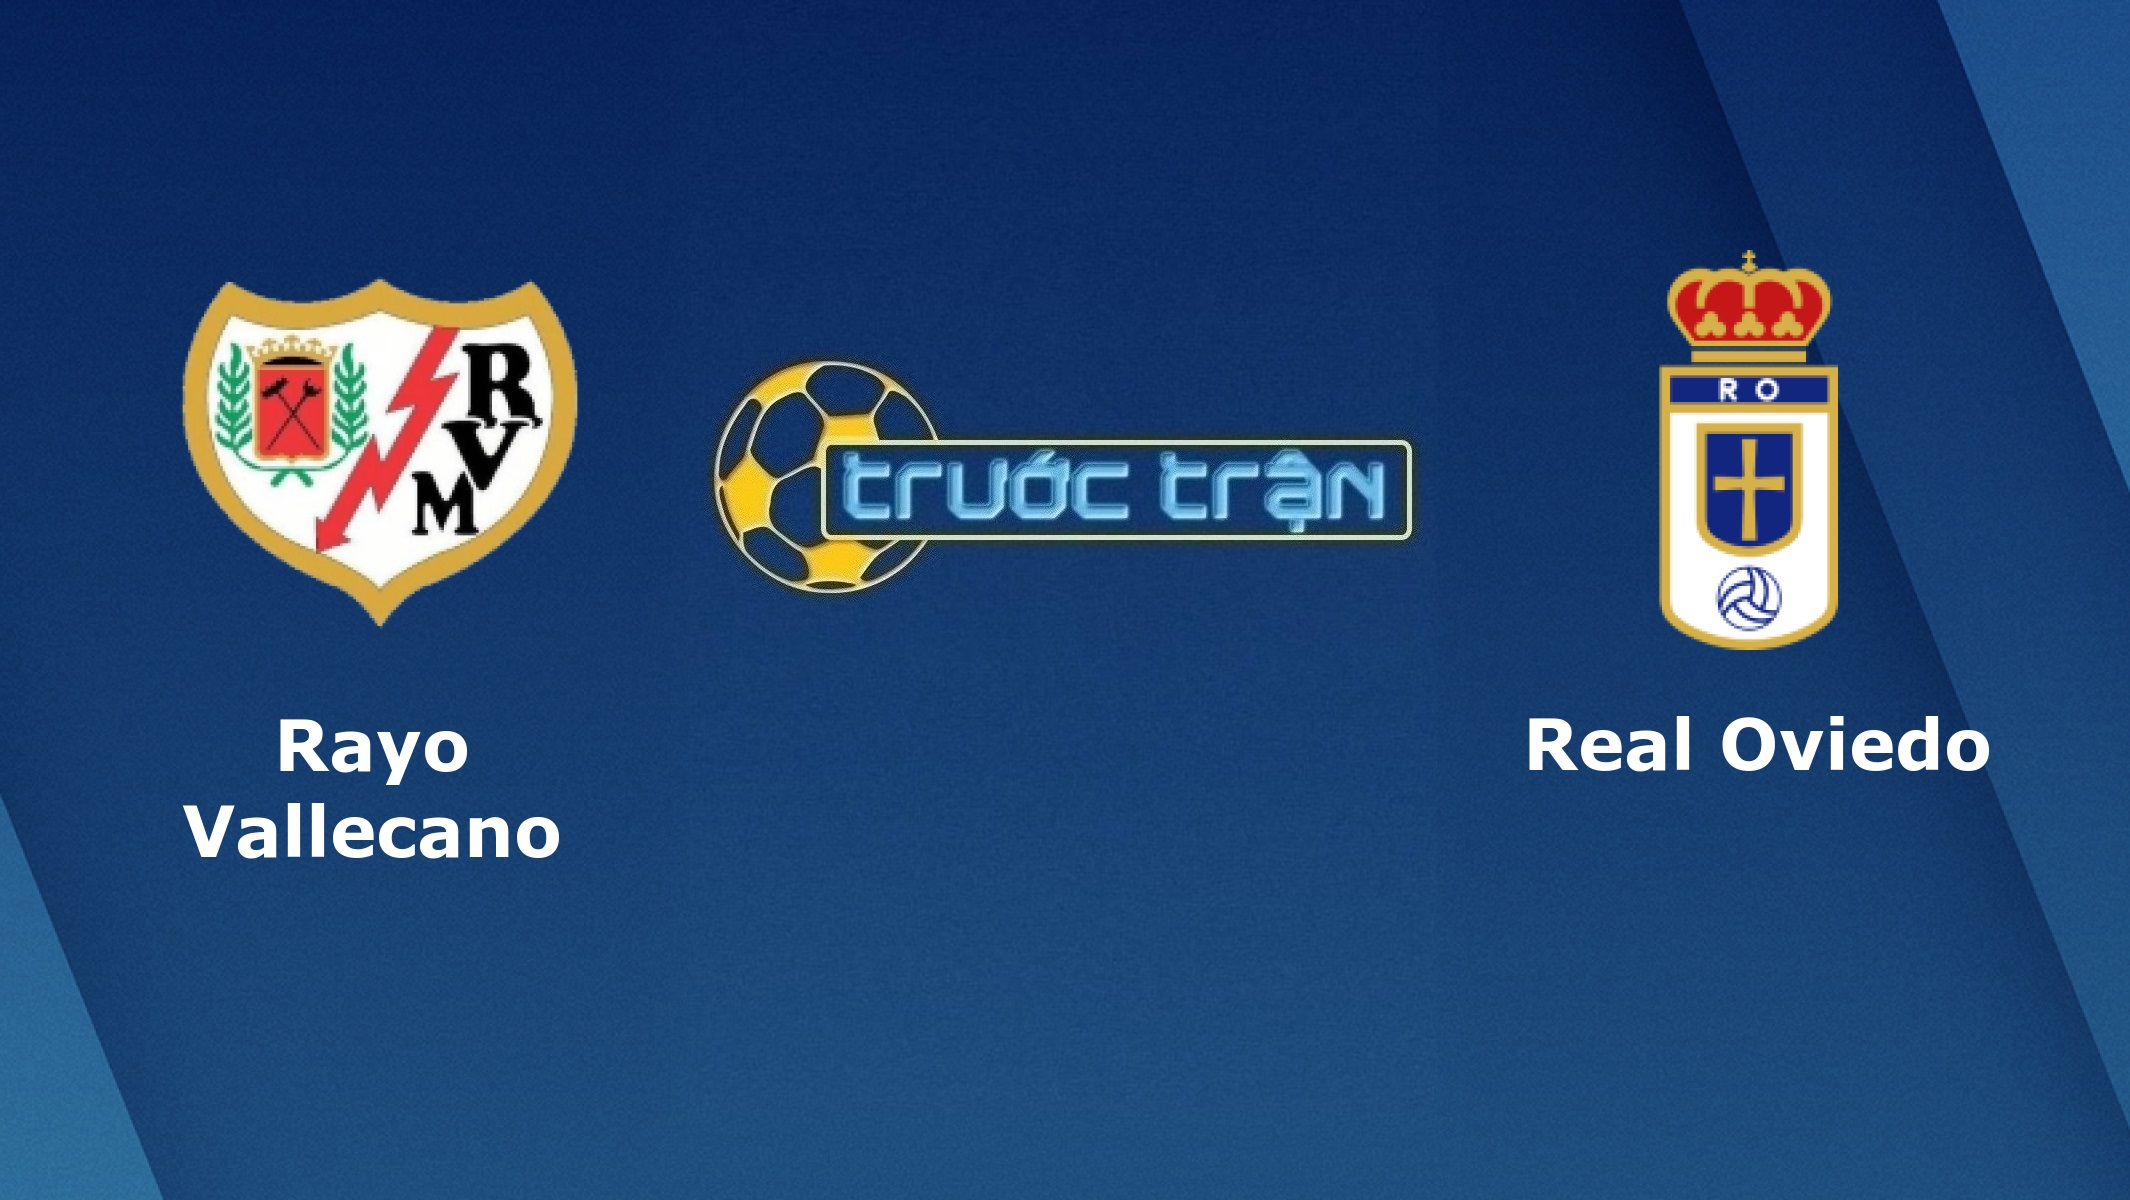 Rayo Vallecano vs Real Oviedo – Tip kèo bóng đá hôm nay – 02h30 21/05/2021